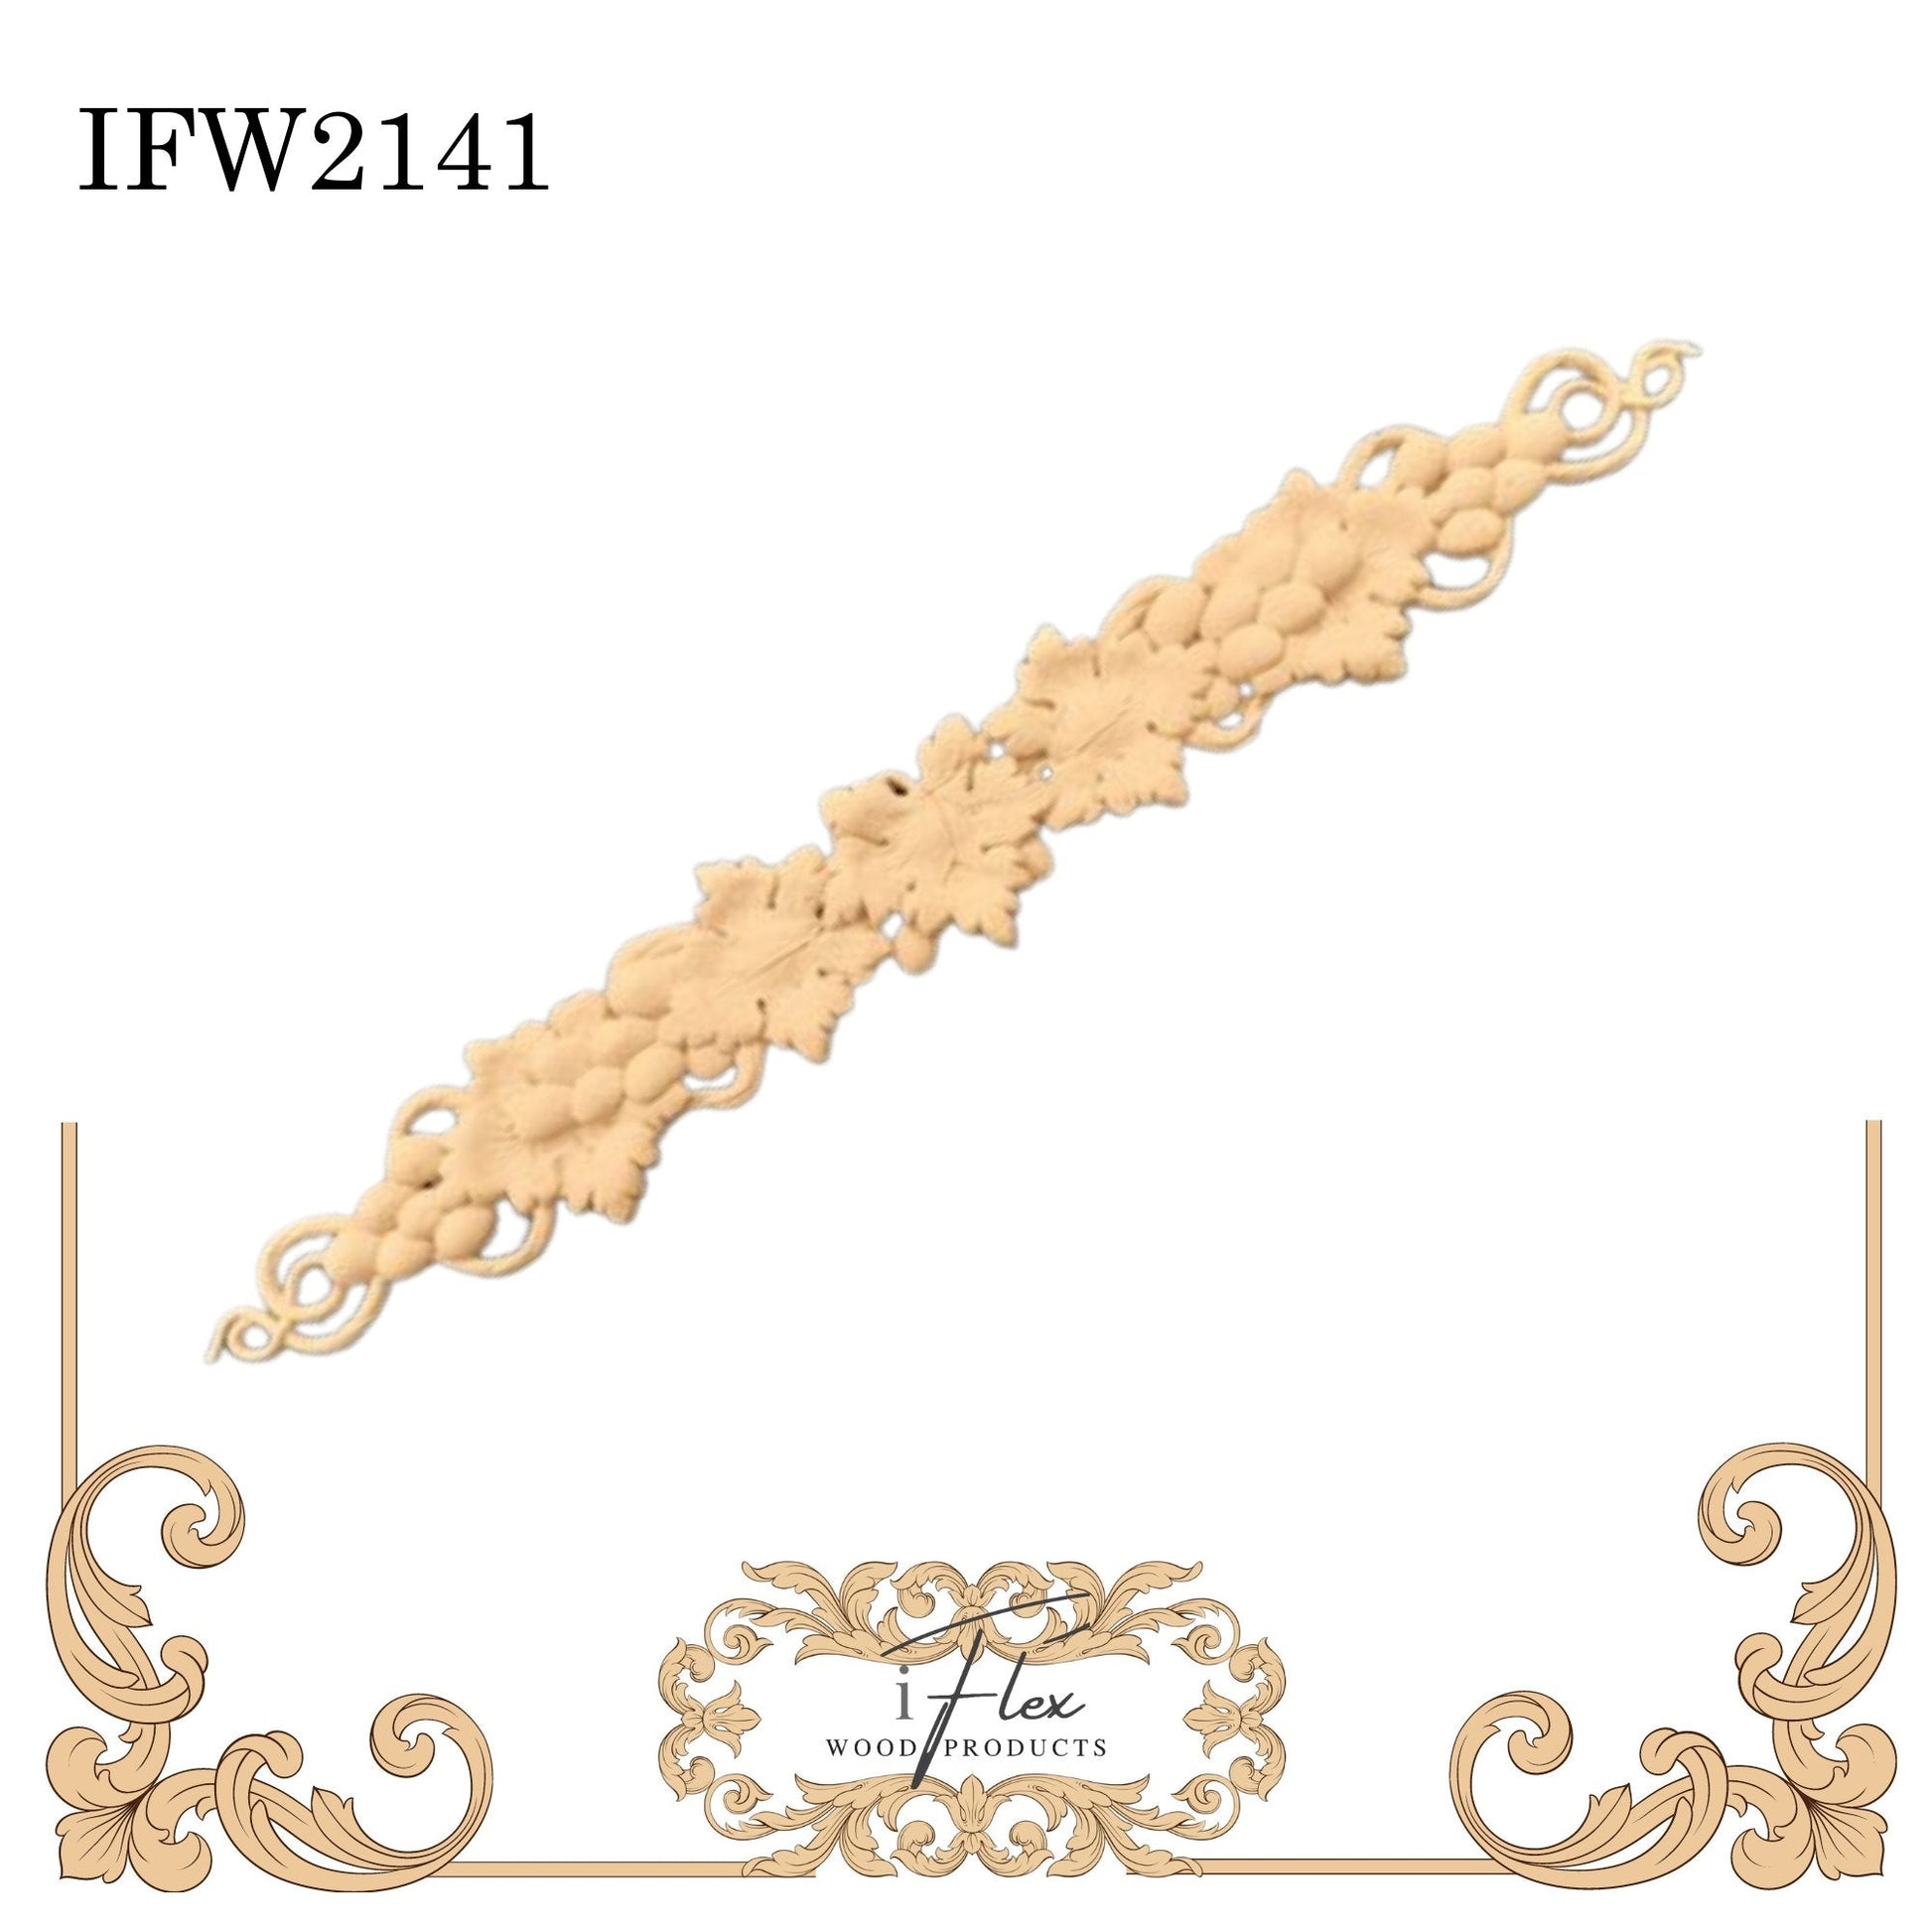 IFW 2141